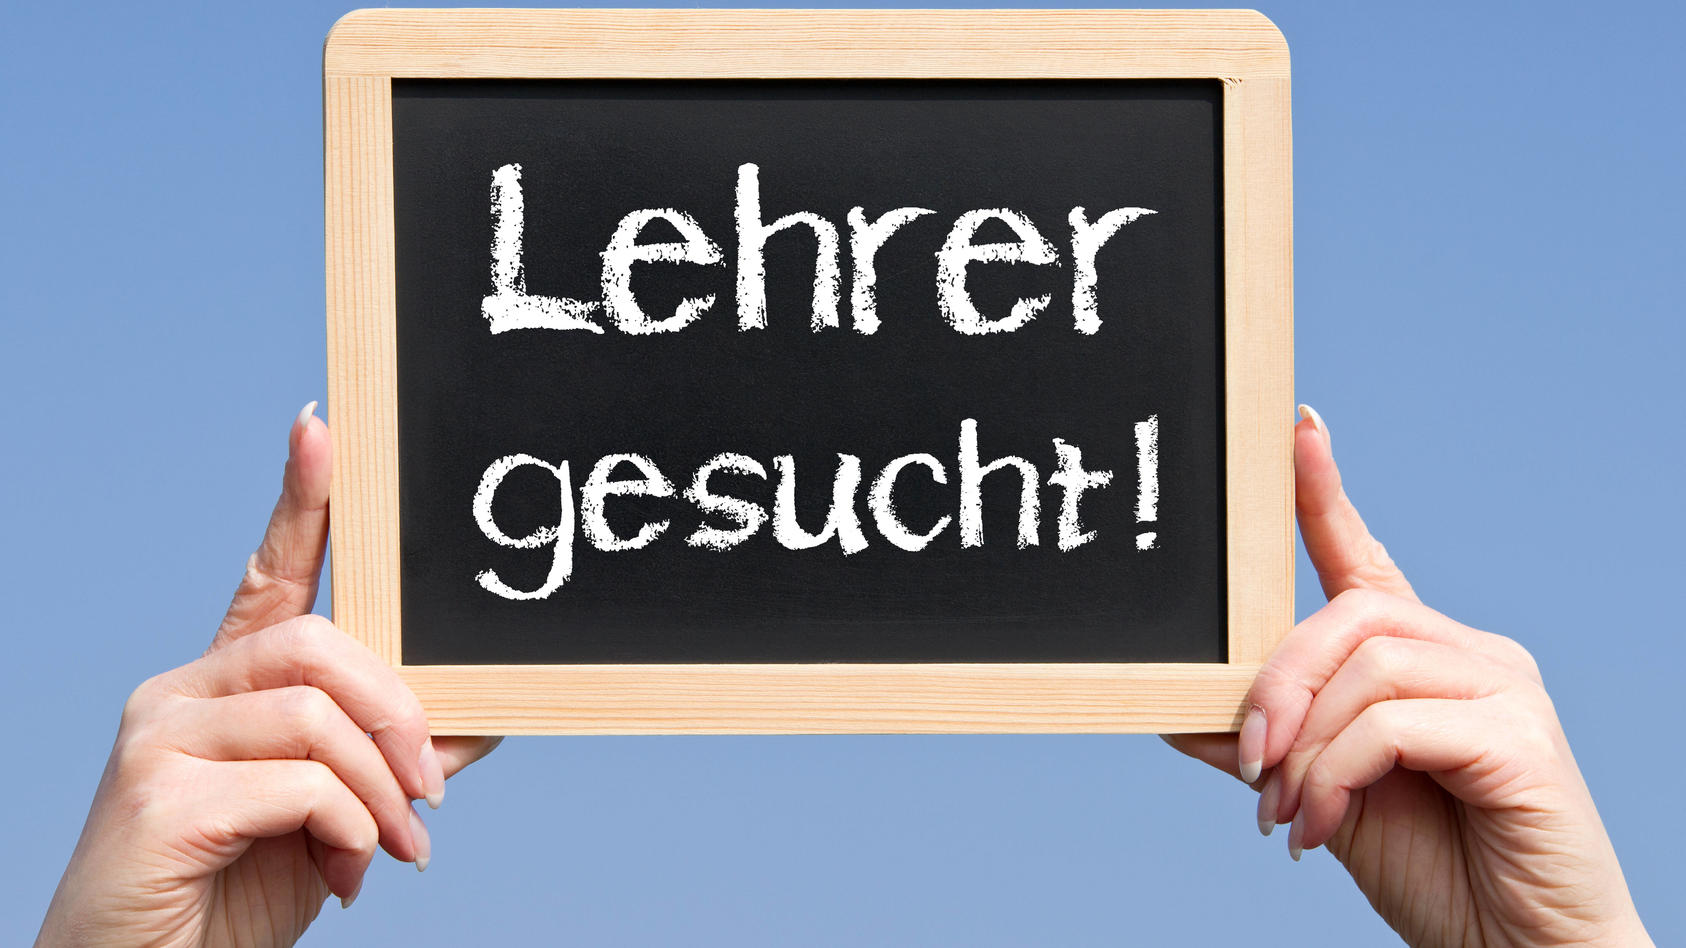 lehrer,lehrermangel *** teacher,teachers lack p4k-gh3,model released, Symbolfoto